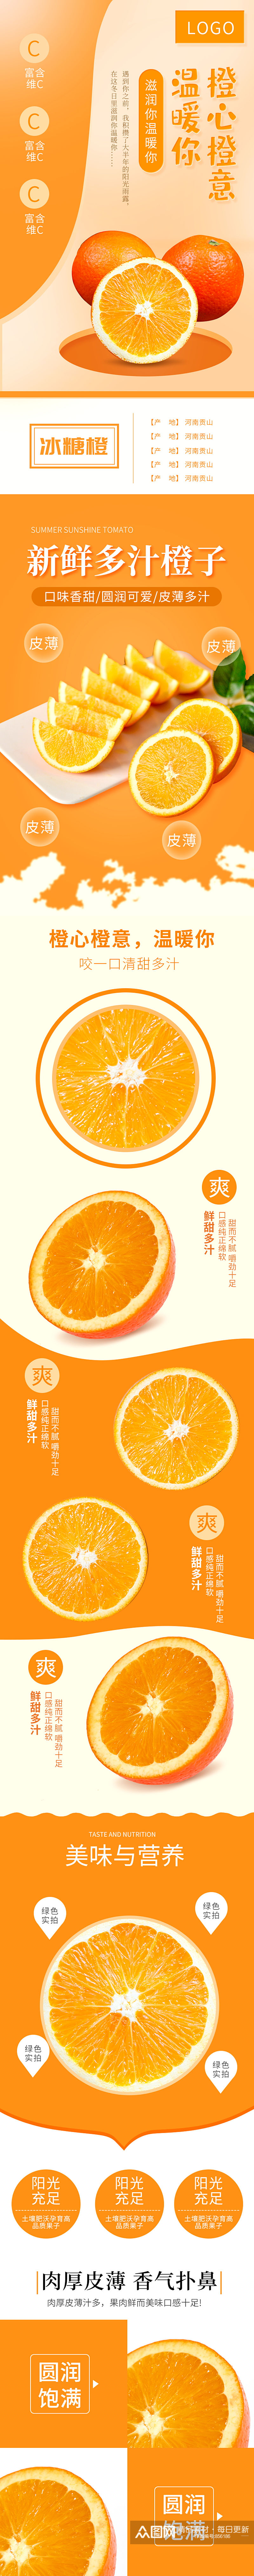 电商淘宝水果生鲜橙子柑橘详情页模板素材